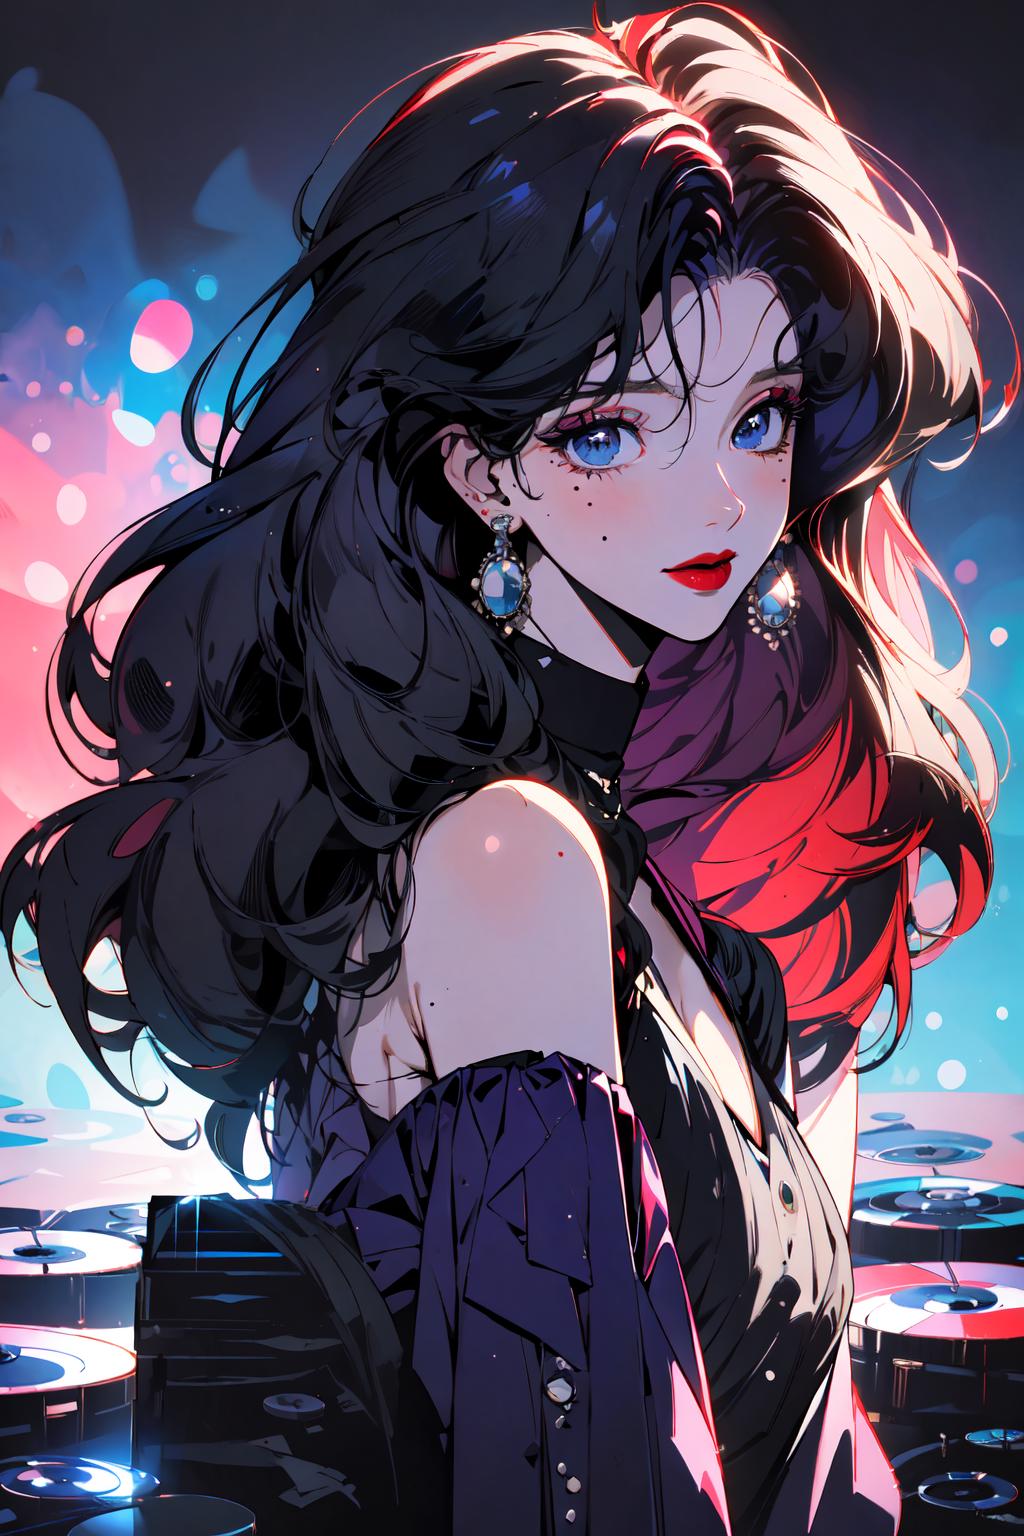 HD wallpaper: anime girl, lipstick, earring, ribbon, blush, studio shot,  white background | Wallpaper Flare